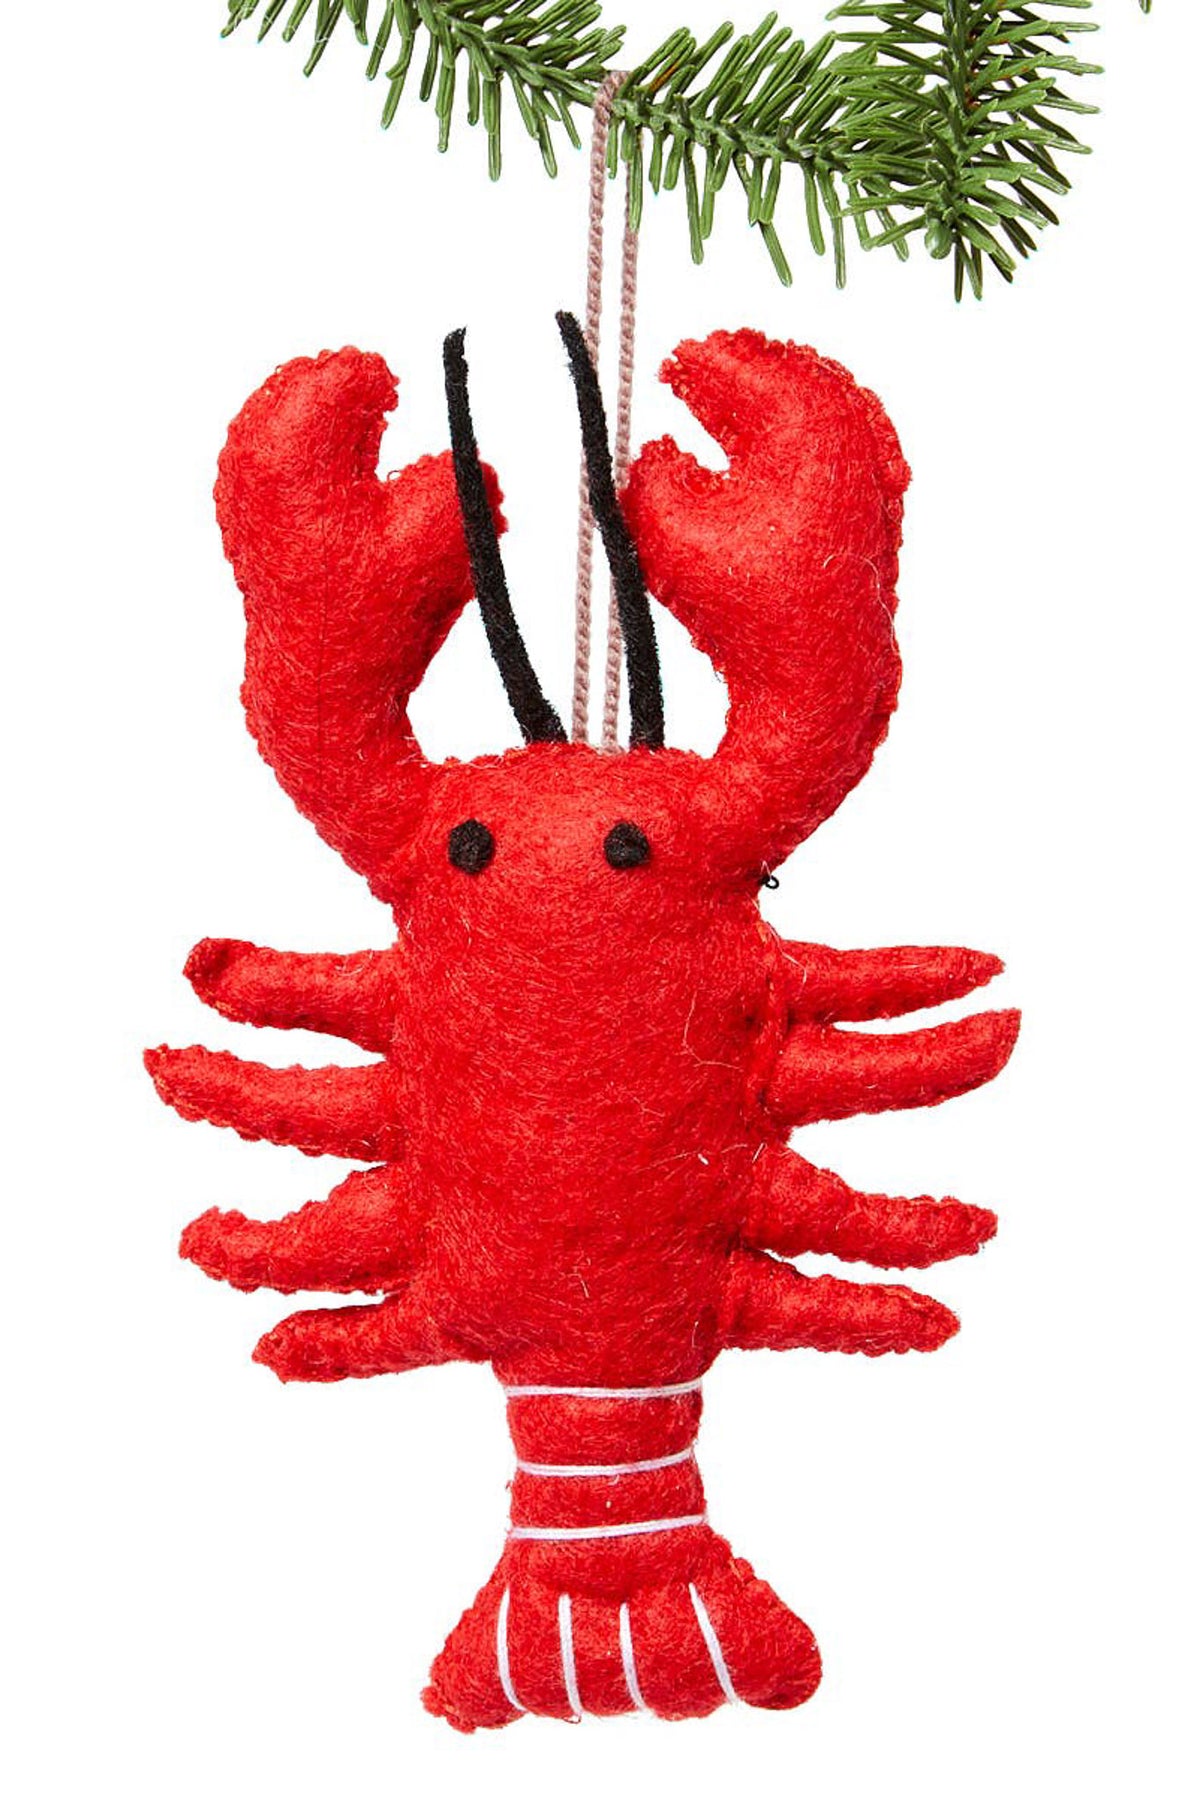 Silk Road Bazaar Bright Lobster Ornament